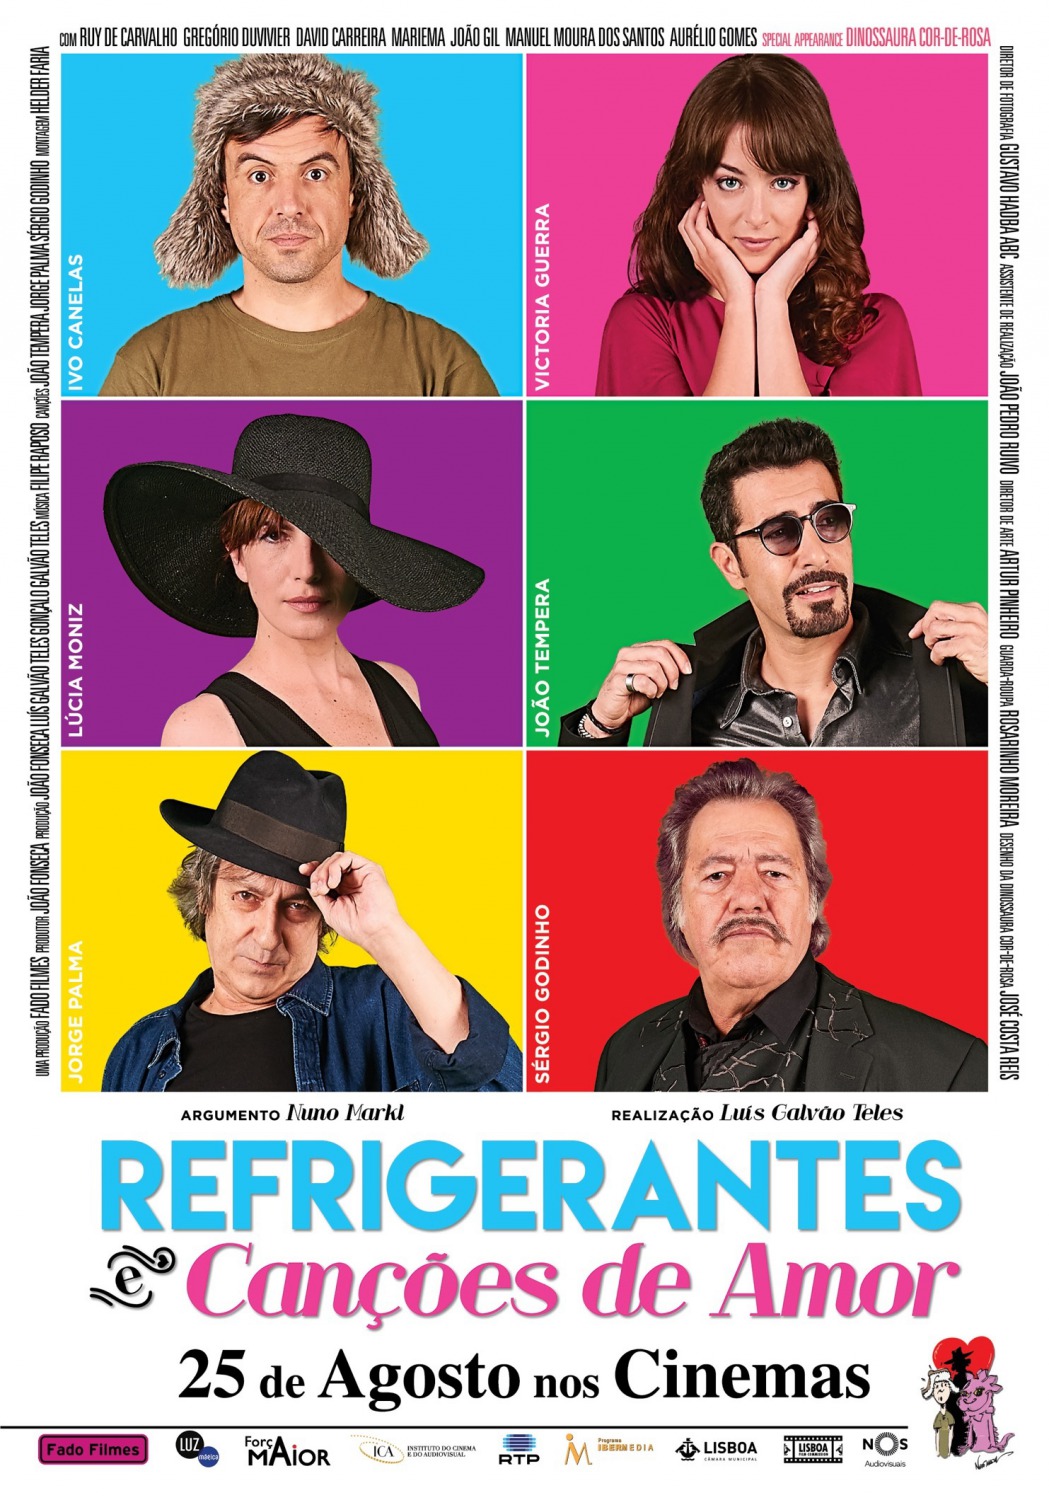 Extra Large Movie Poster Image for Refrigerantes e Canções de Amor 